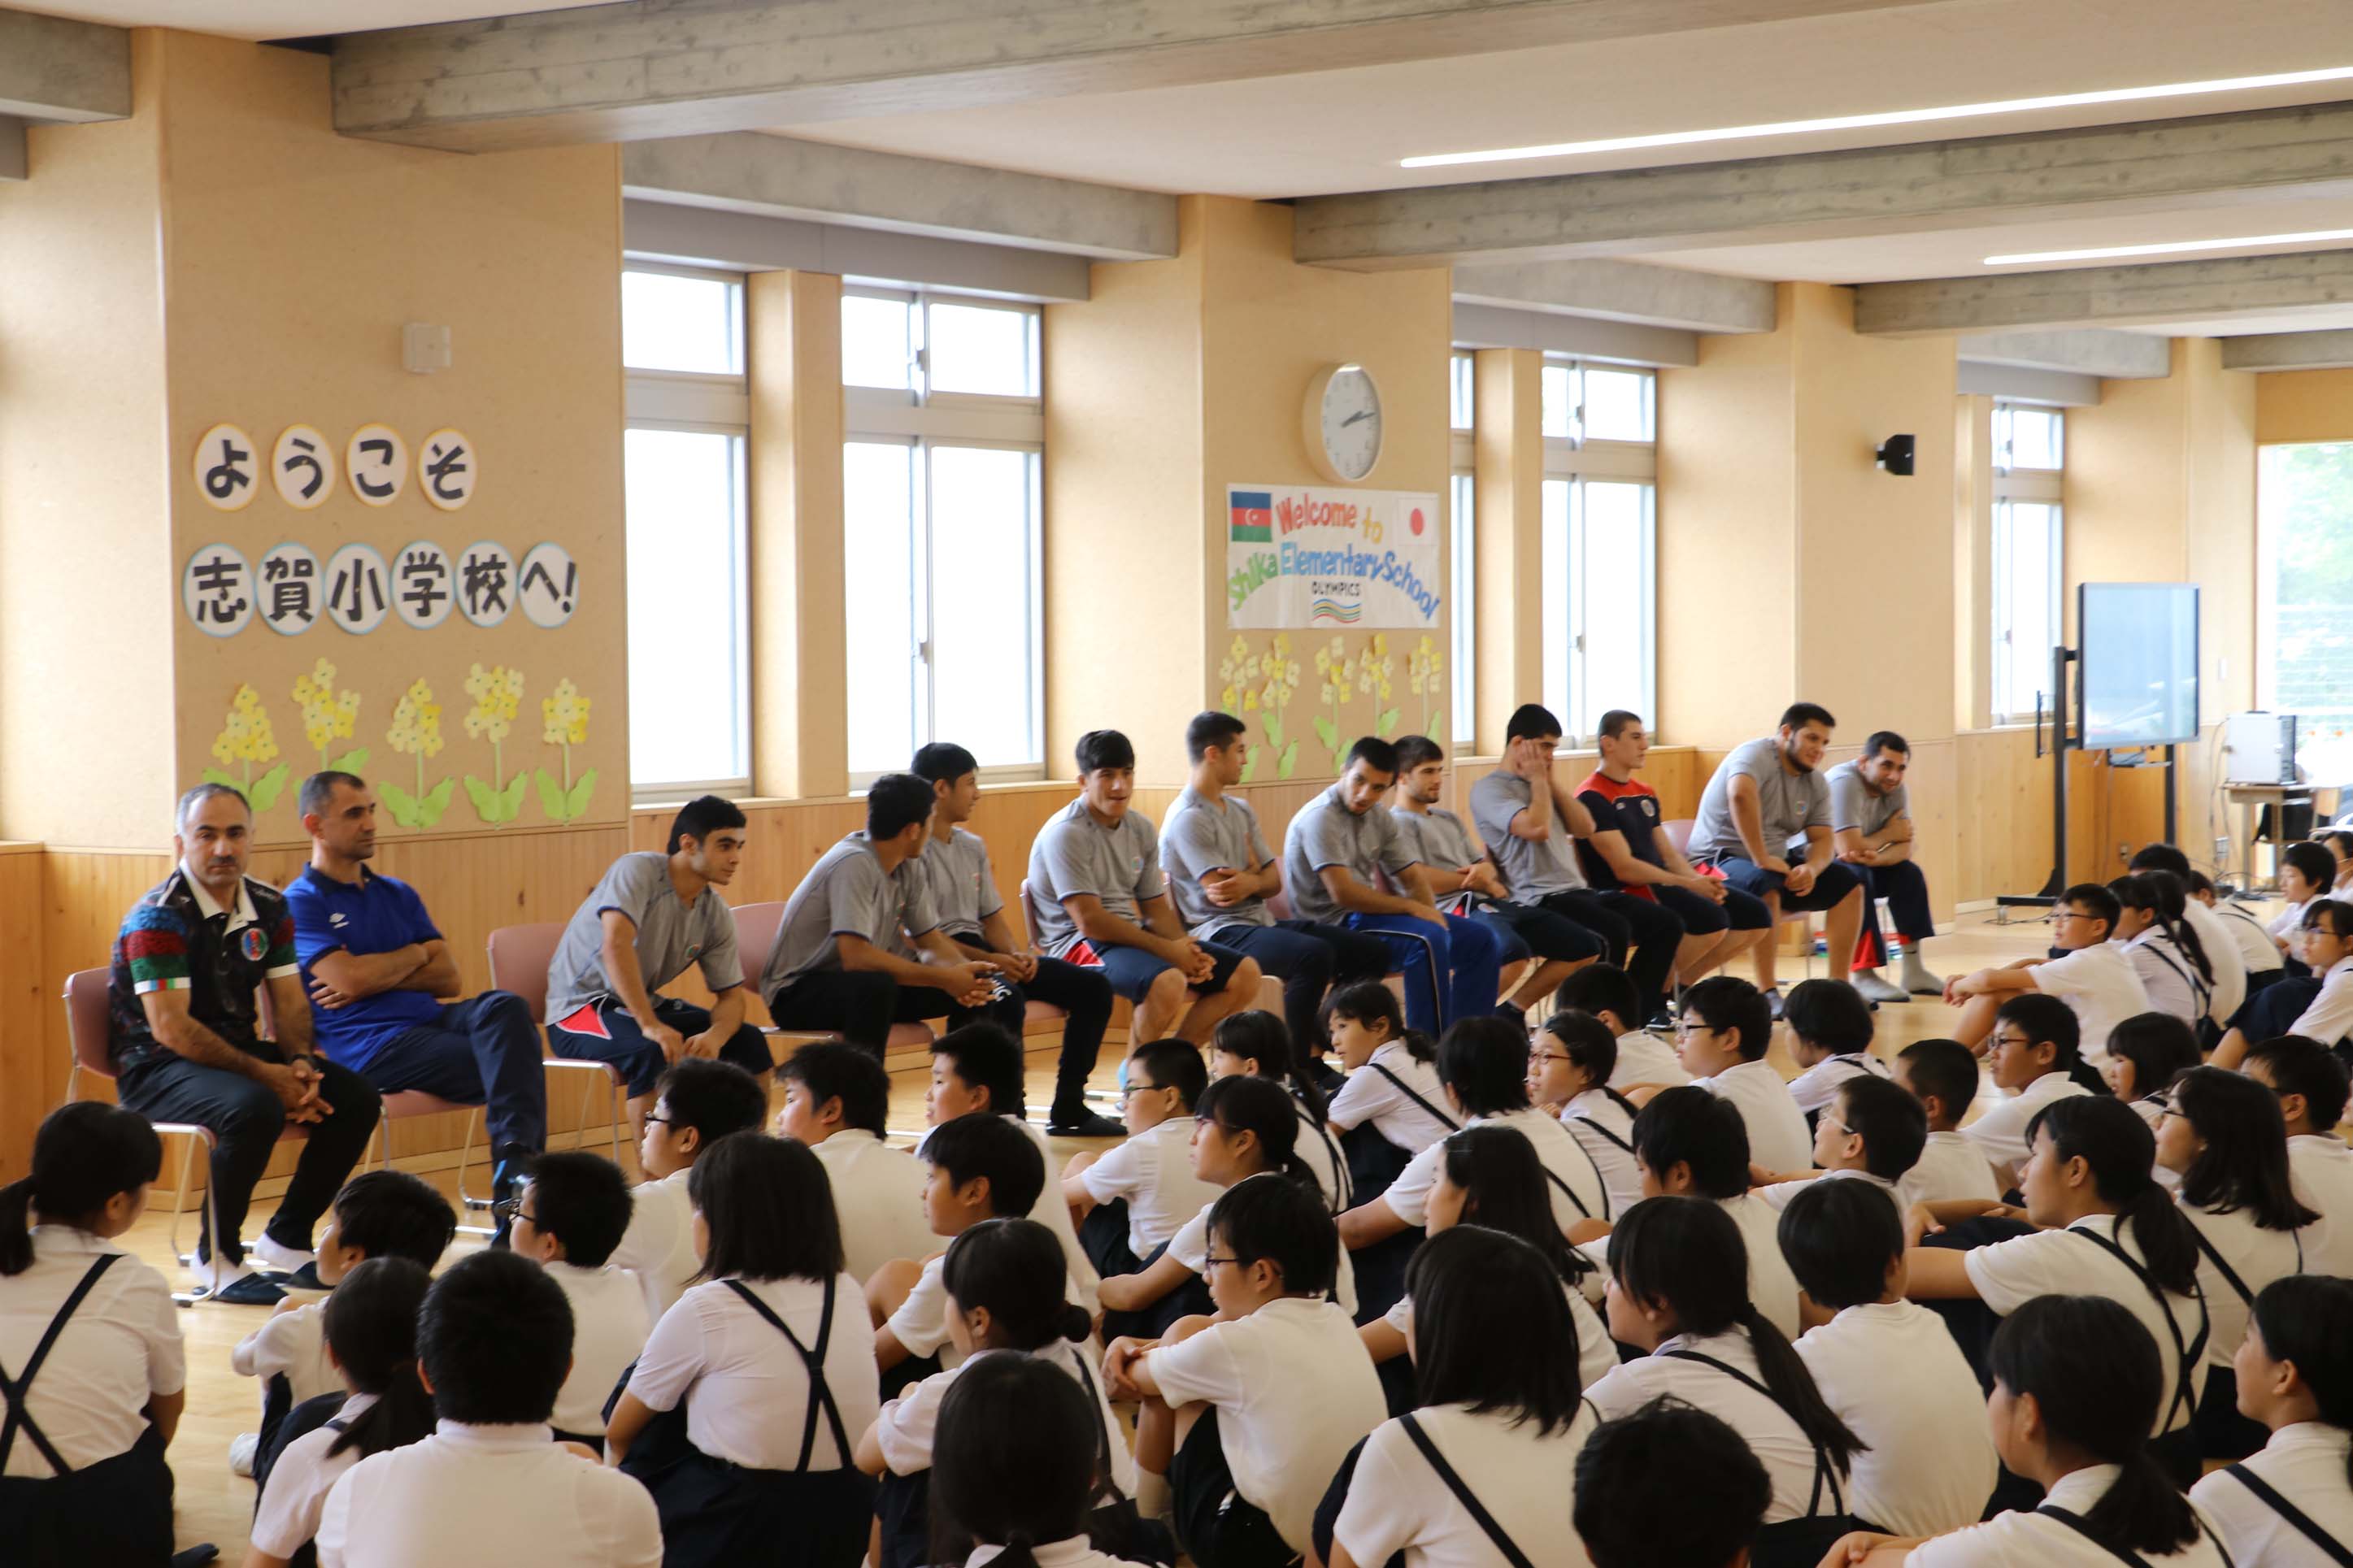 アゼルバイジャン代表チーム志賀小学校で歓迎